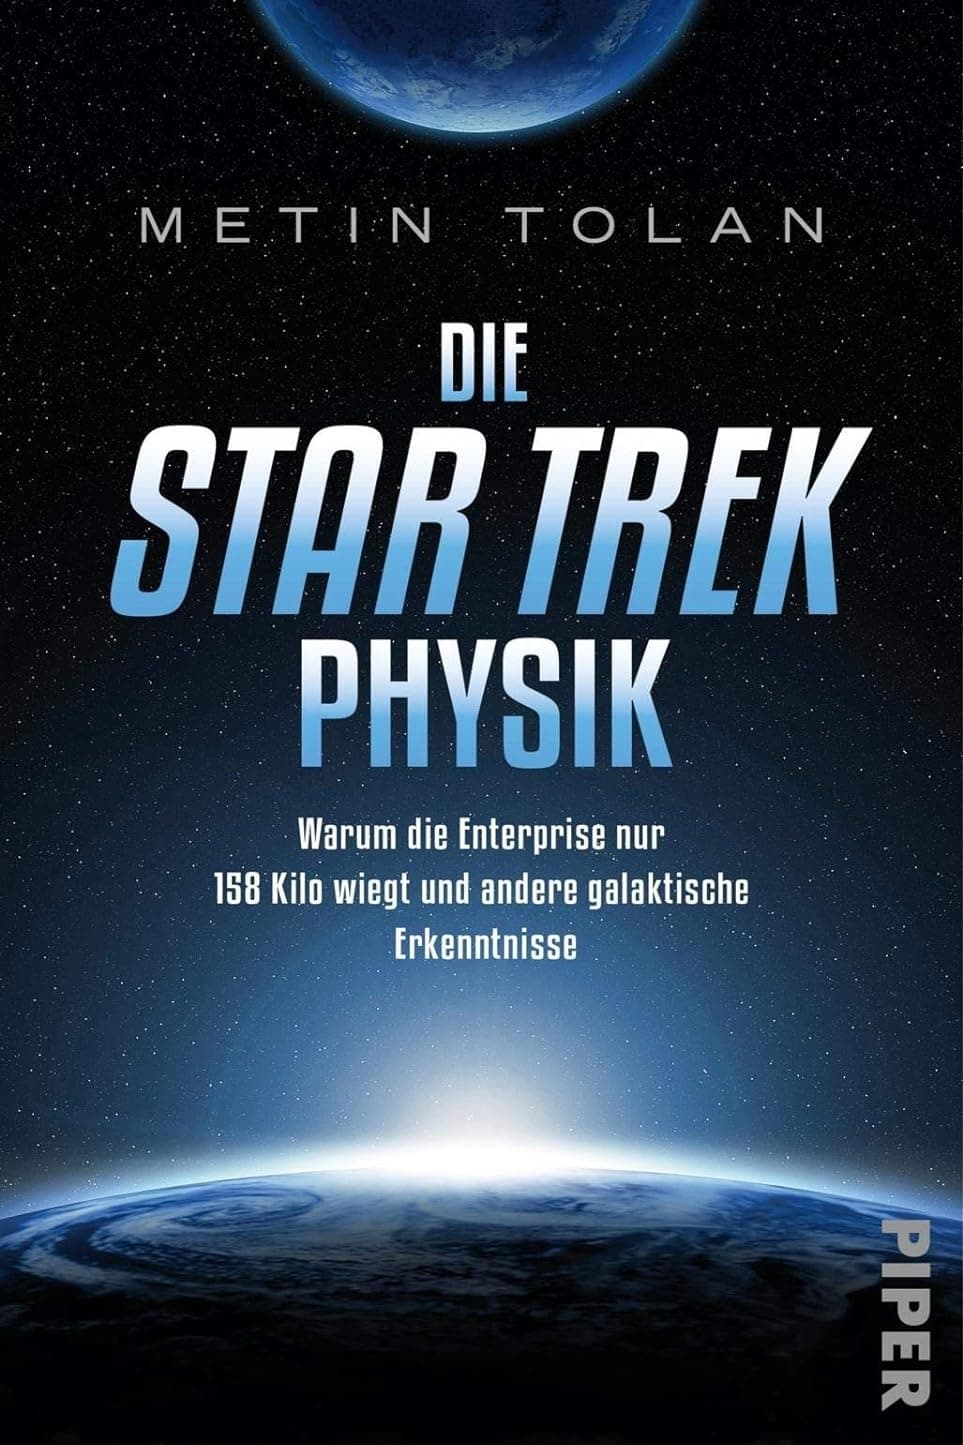 Die Star Trek Physik